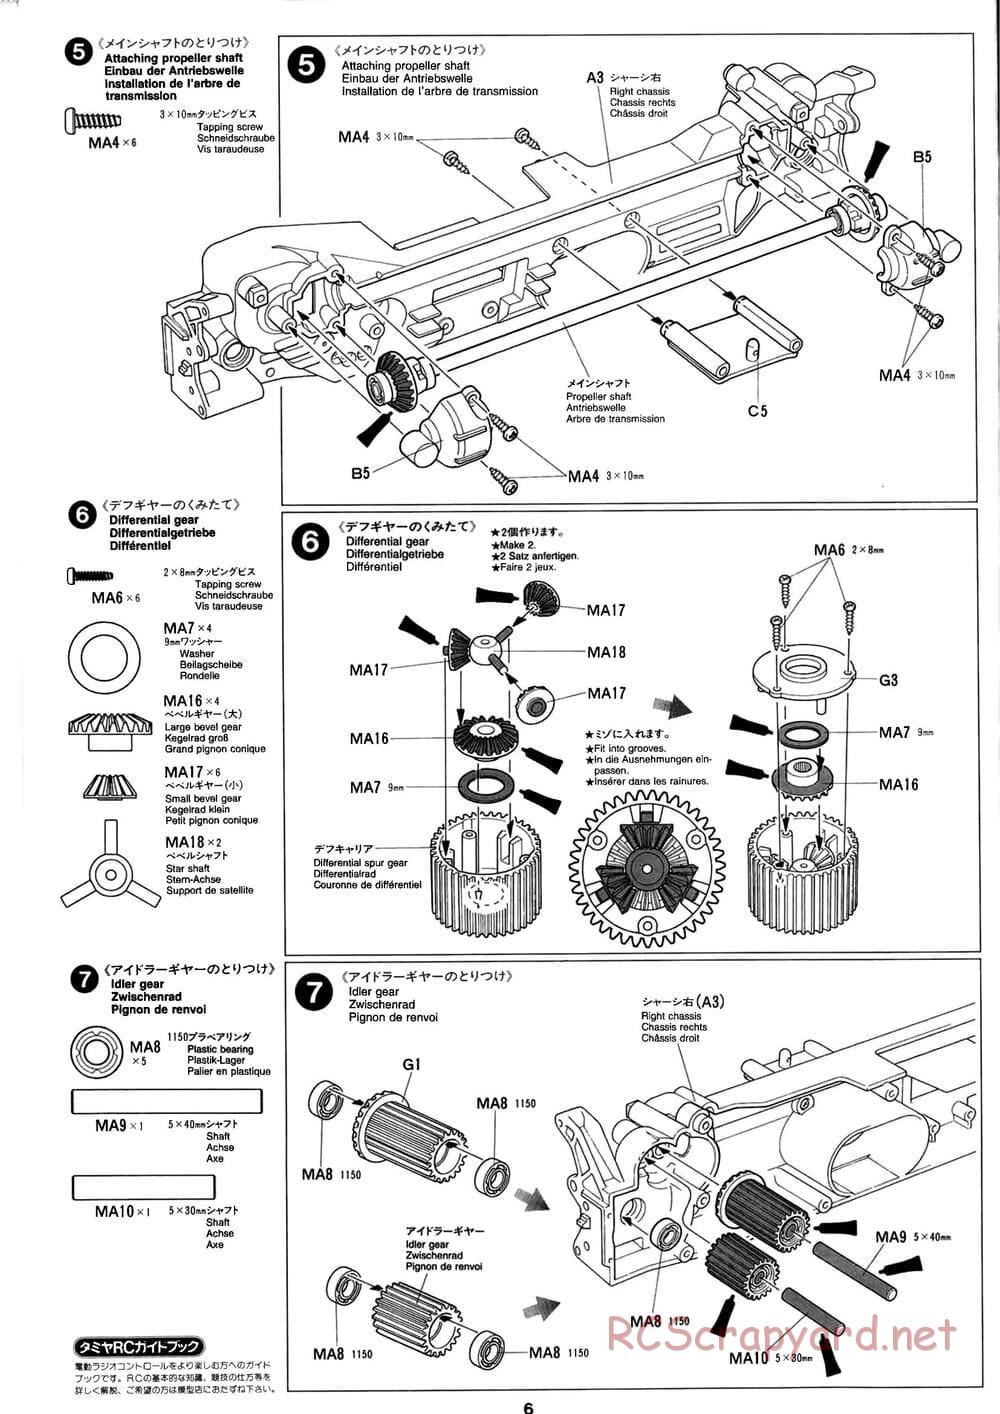 Tamiya - Baja Champ - TL-01B Chassis - Manual - Page 6